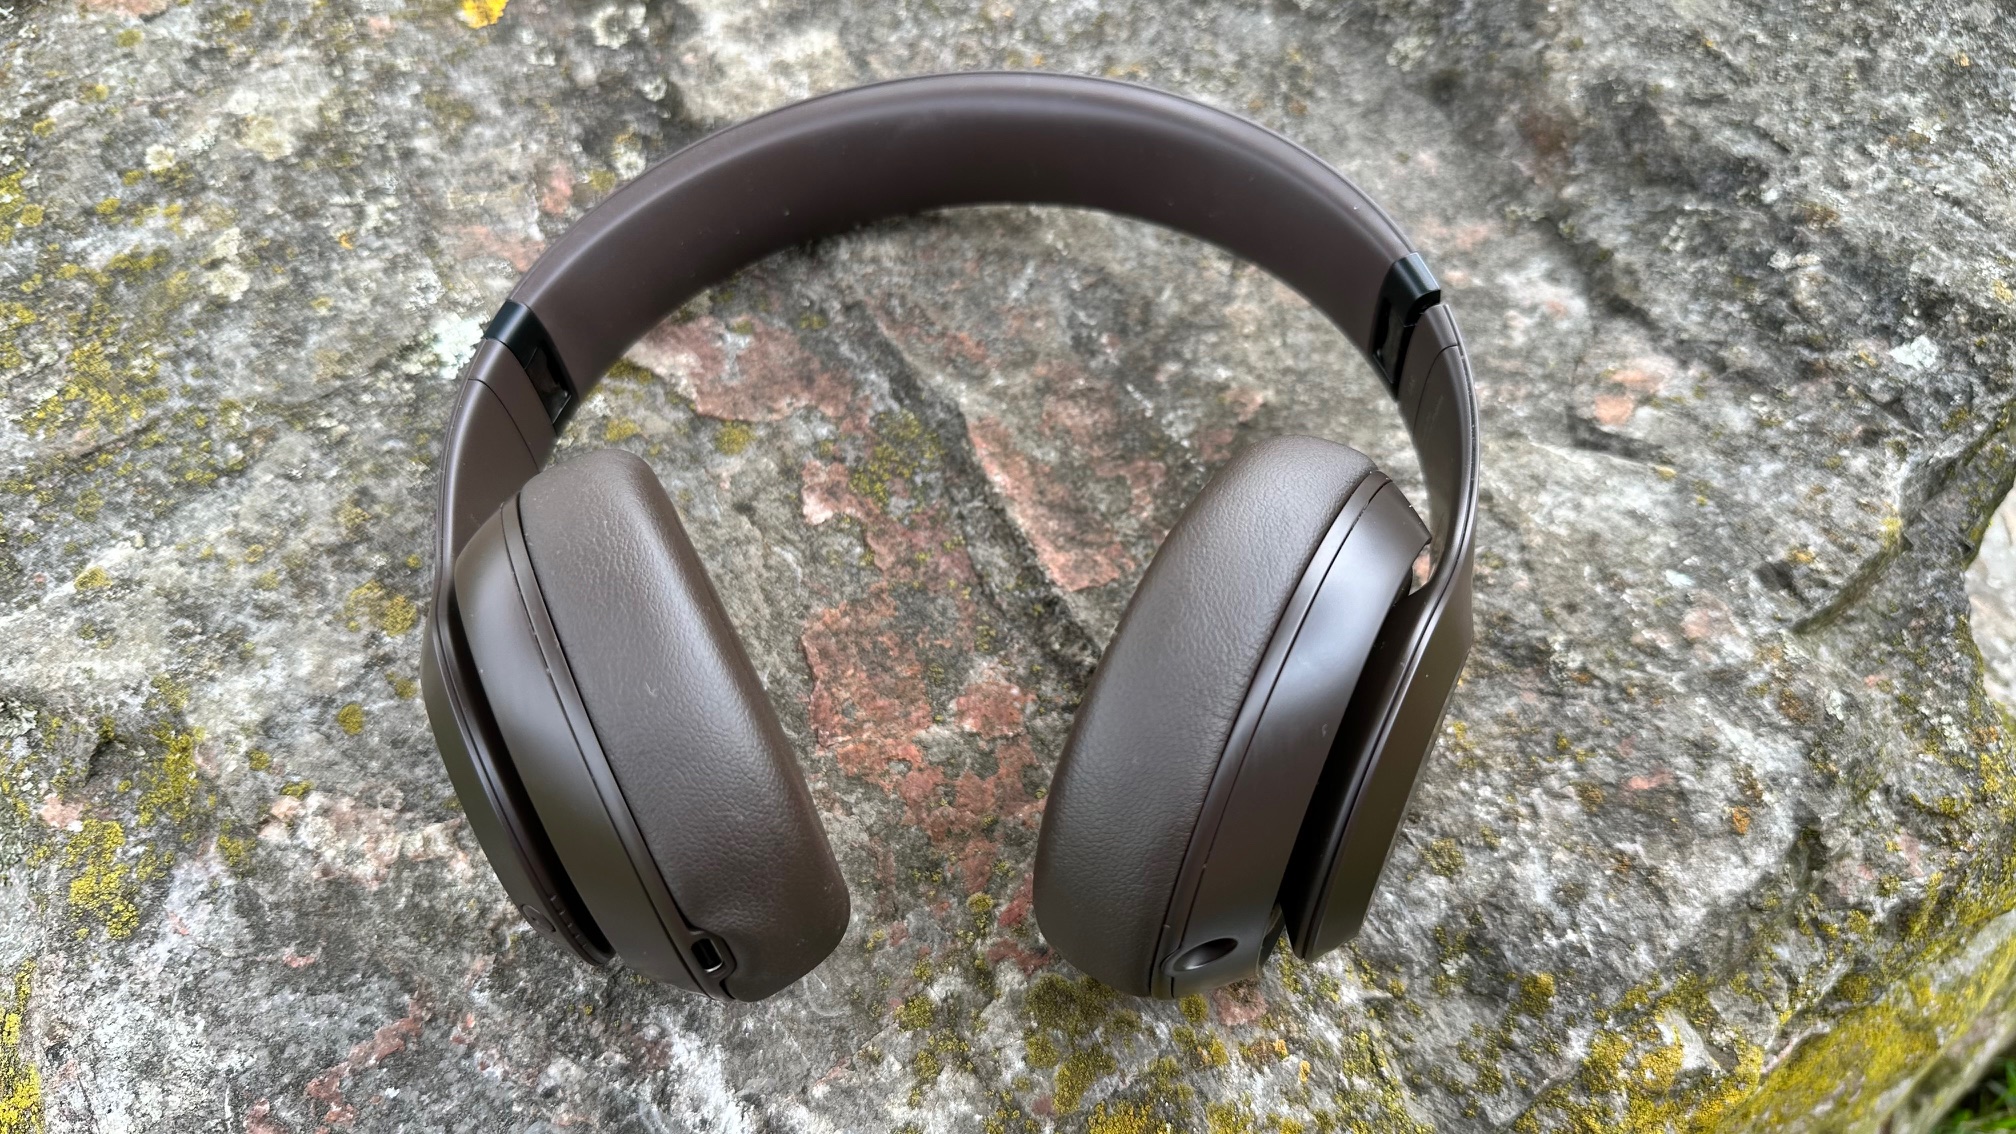 Beats Studio Pro Bluetooth Wireless Headphones - Navy : Target